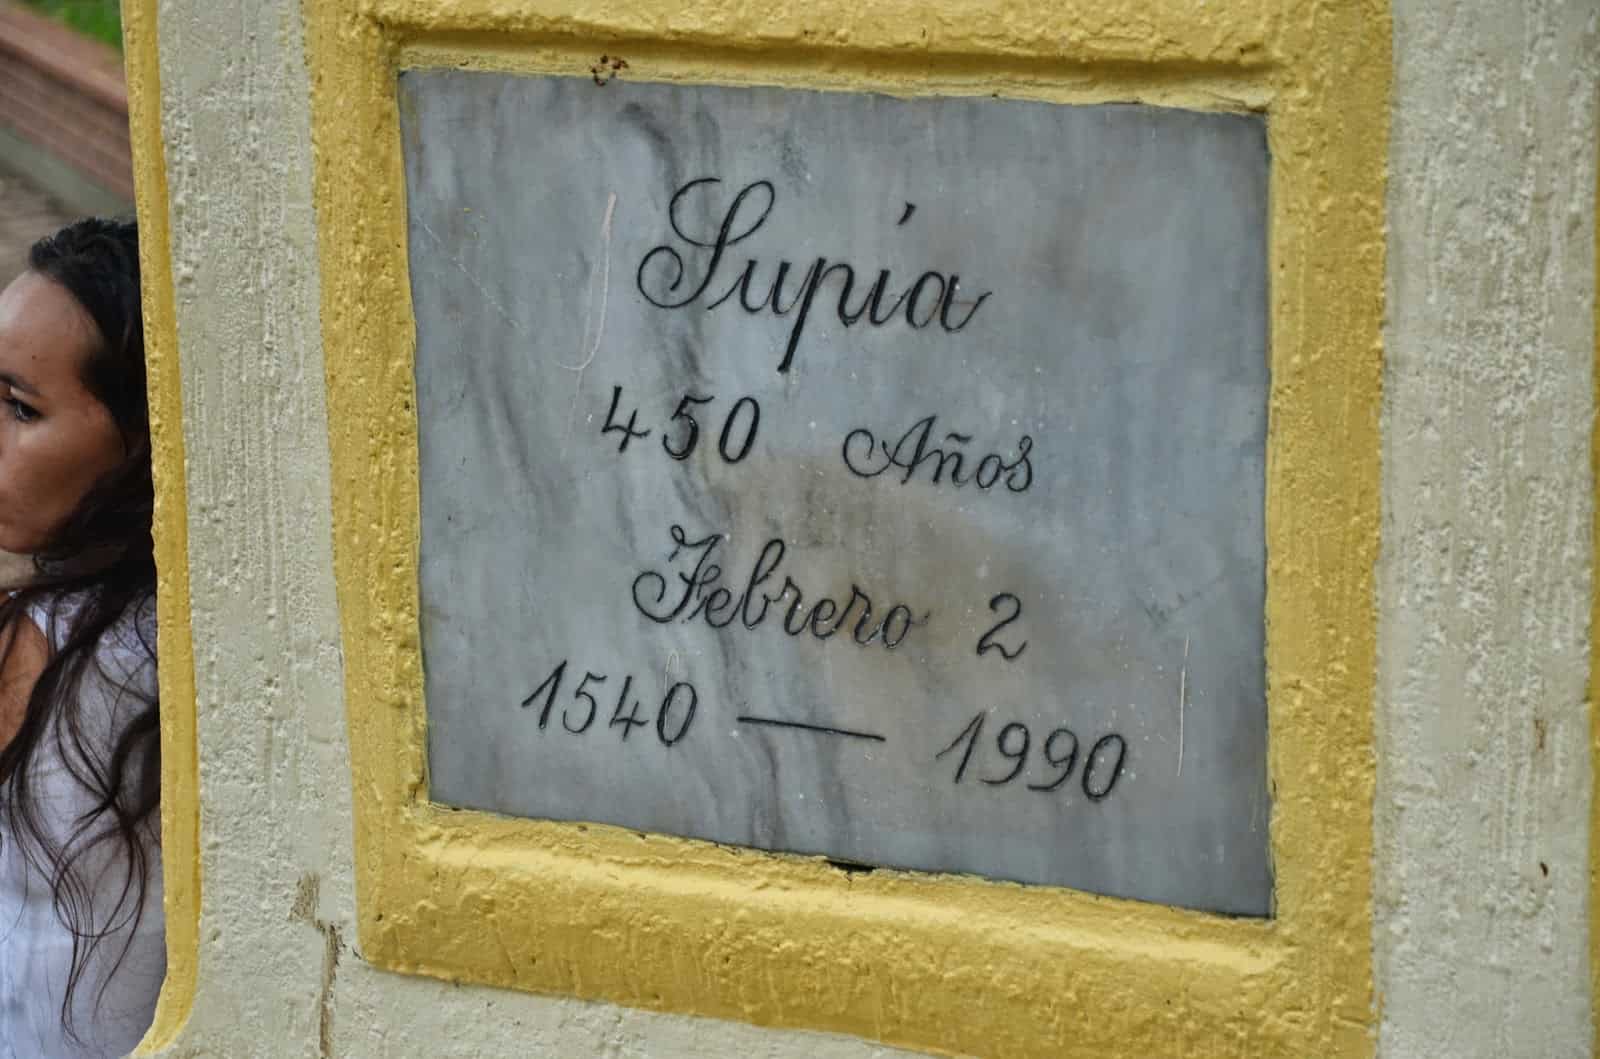 Simón Bolívar monument in Supía, Caldas, Colombia